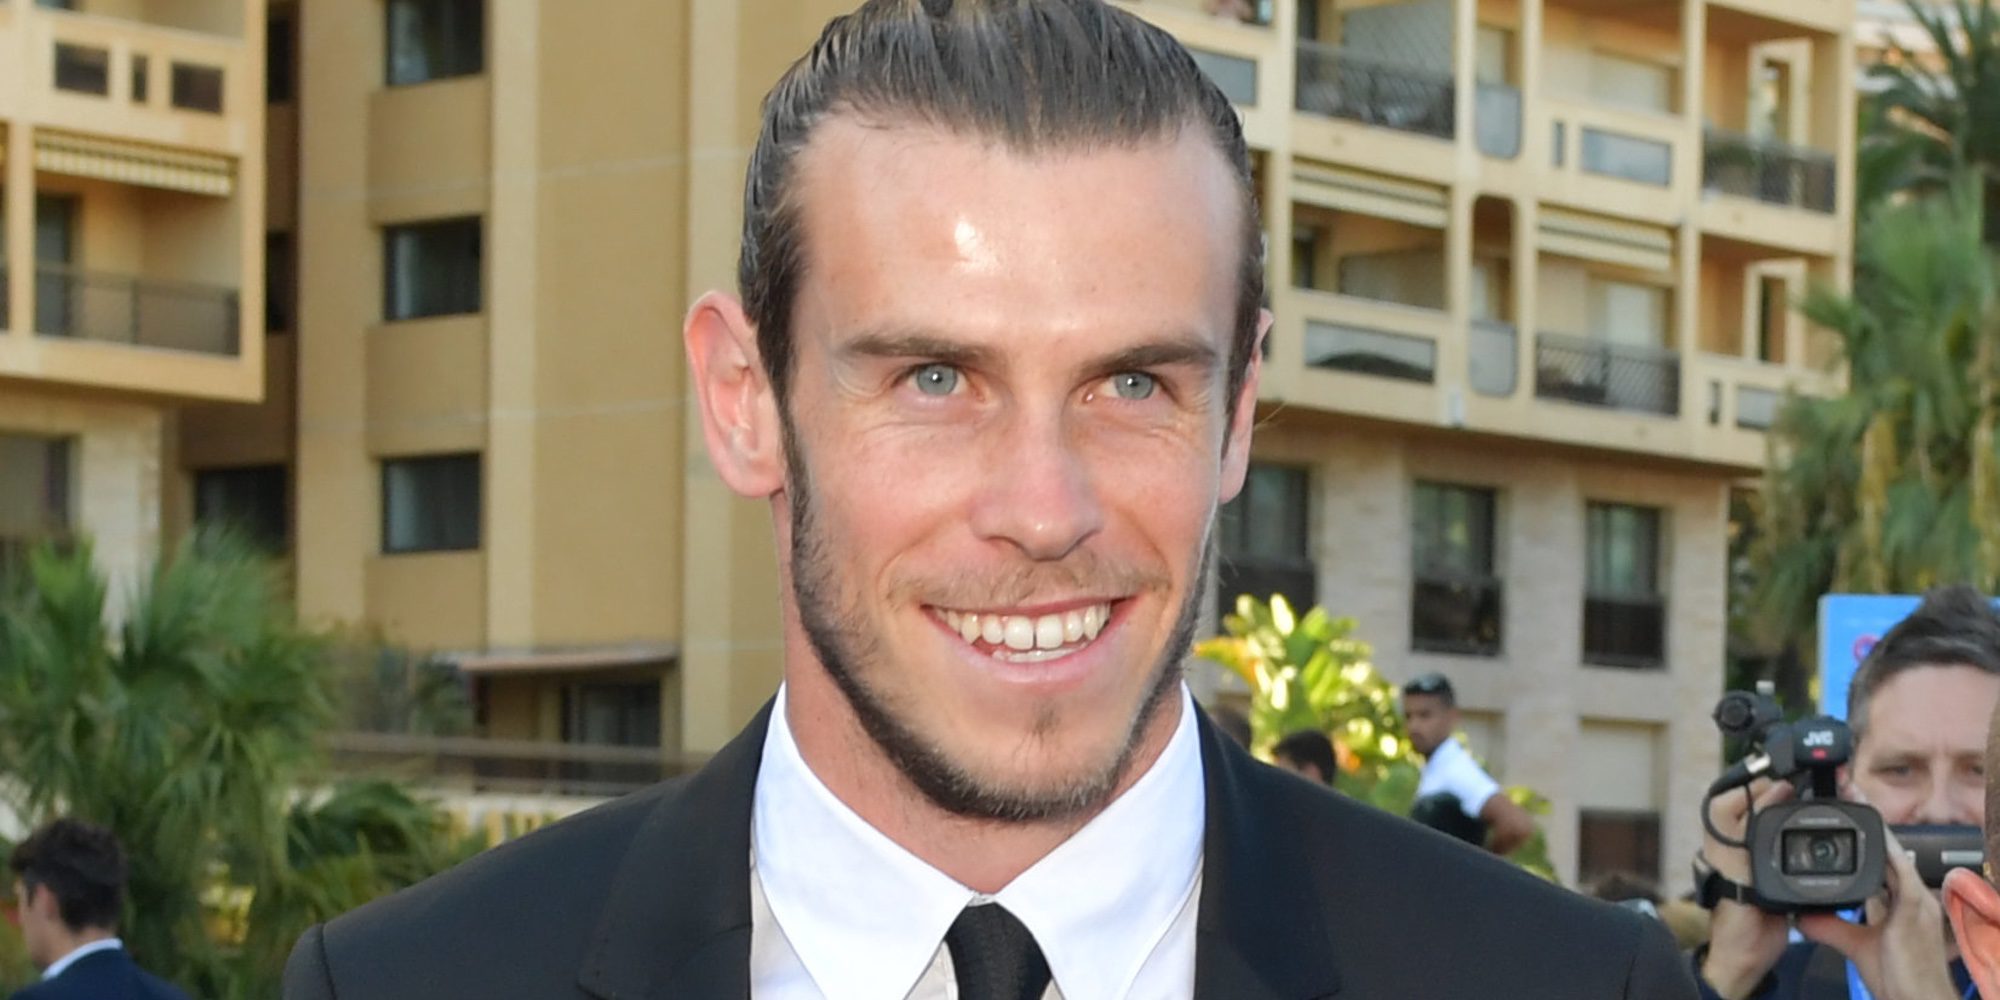 El futuro suegro de Gareth Bale, condenado a seis años de prisión por estafar 2,5 millones de euros